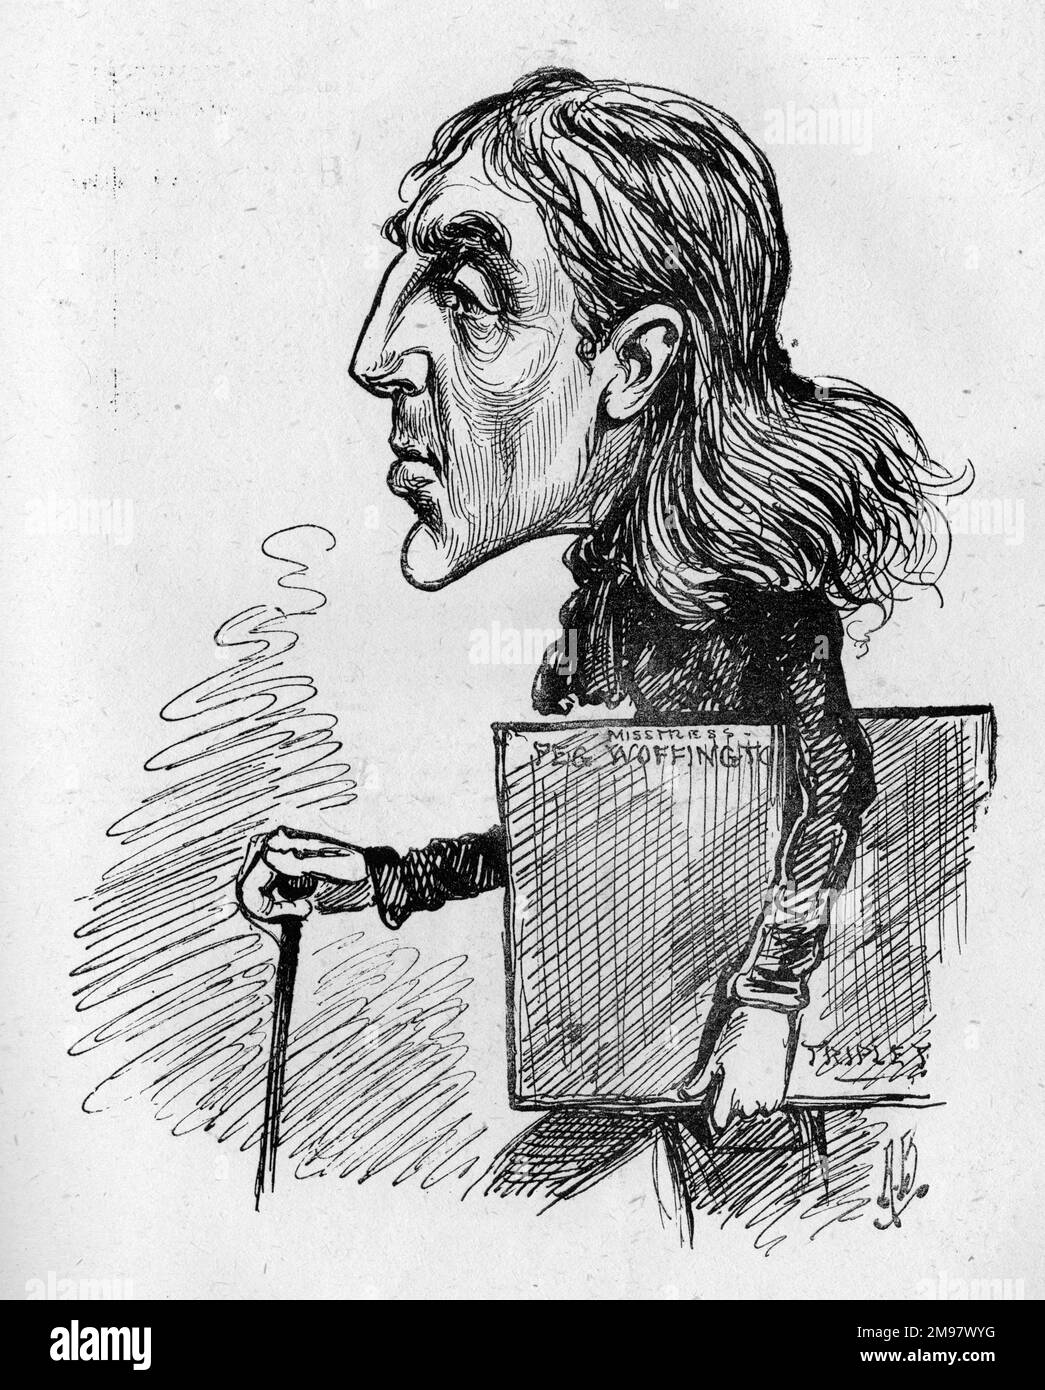 Caricatura del actor-director inglés Sir Squire Bancroft (1841-1926) en el personaje de Triplet en una producción de máscaras y caras, escrita en 1852 por Charles Reade y Tom Taylor. Foto de stock